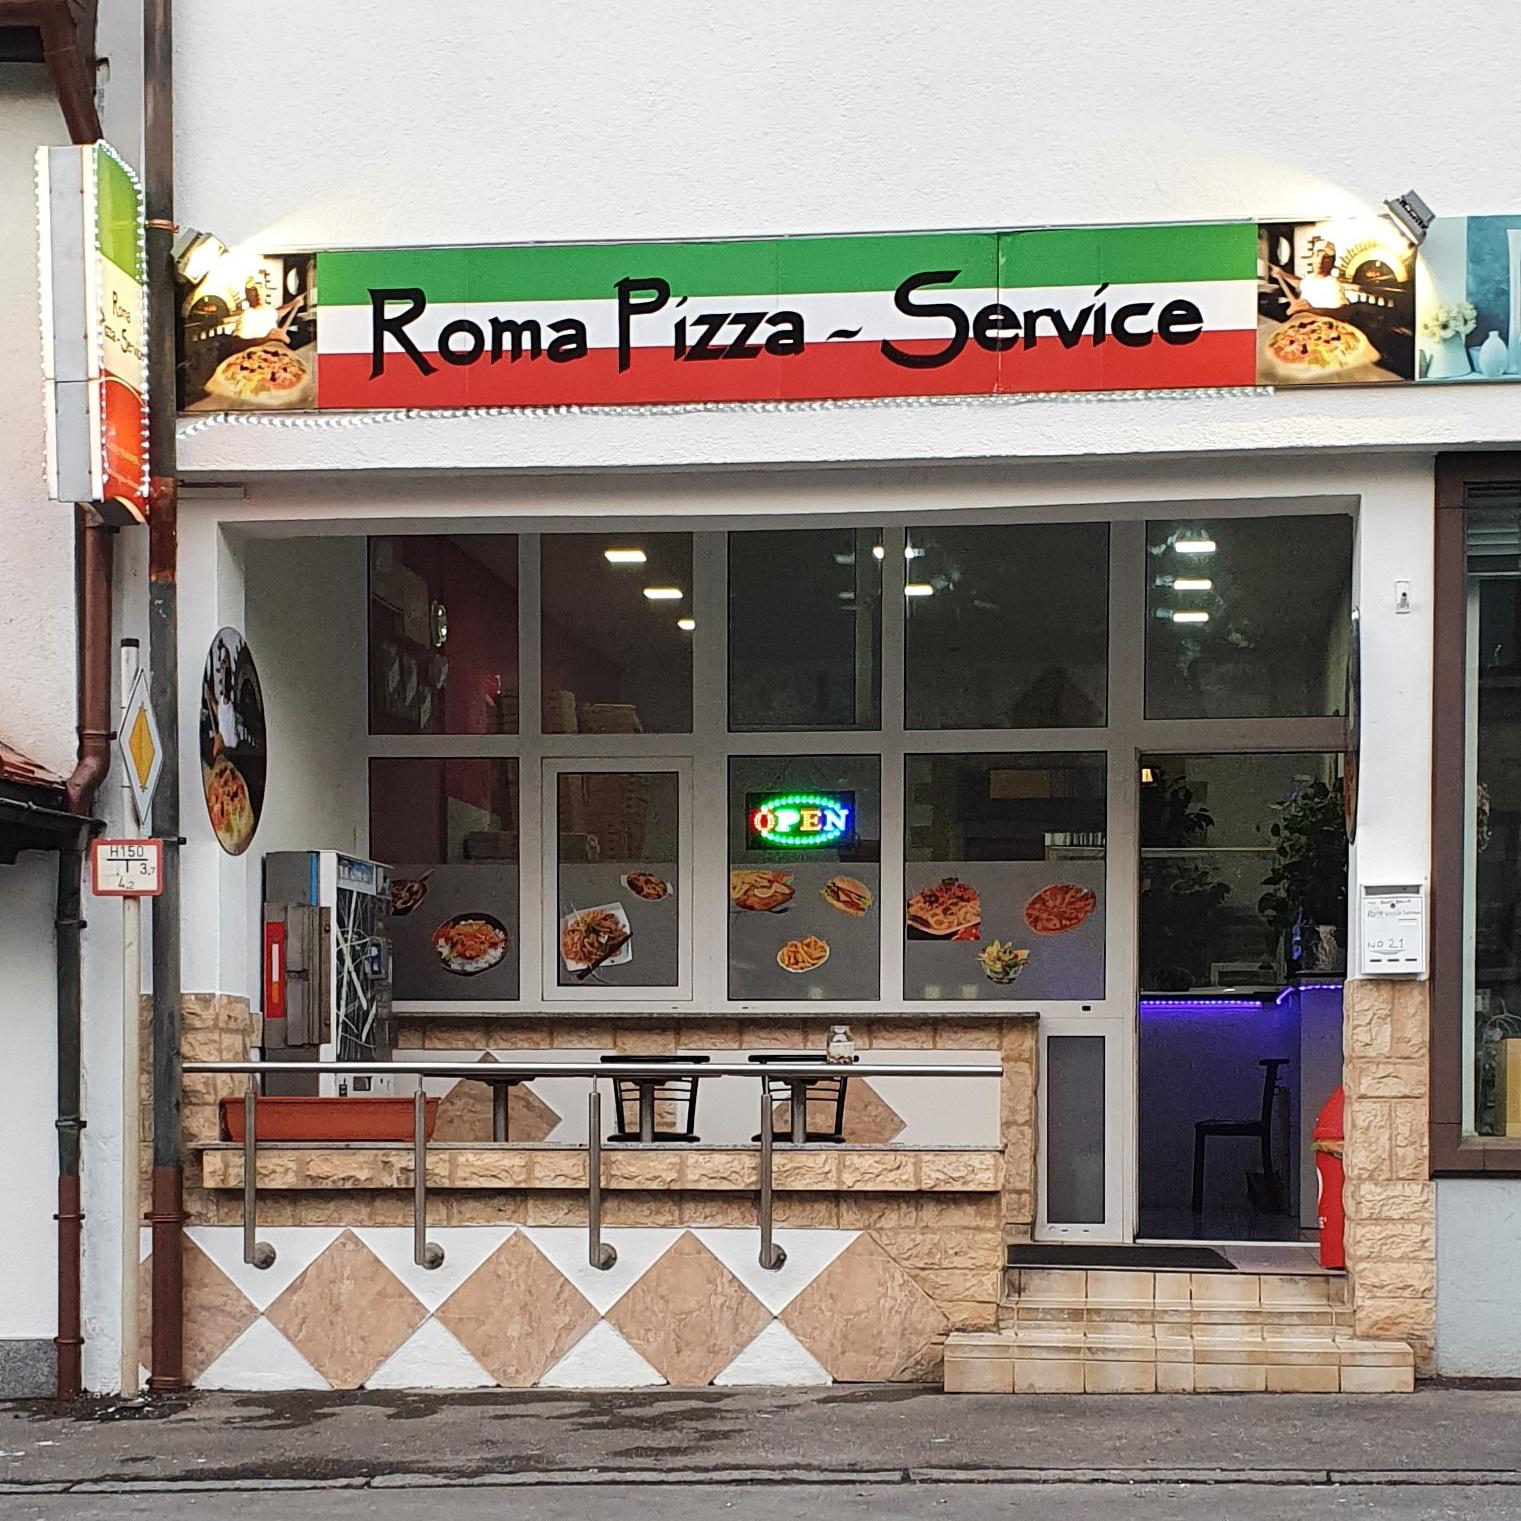 Restaurant "Roma Pizza-Service Lichtenstein" in Lichtenstein